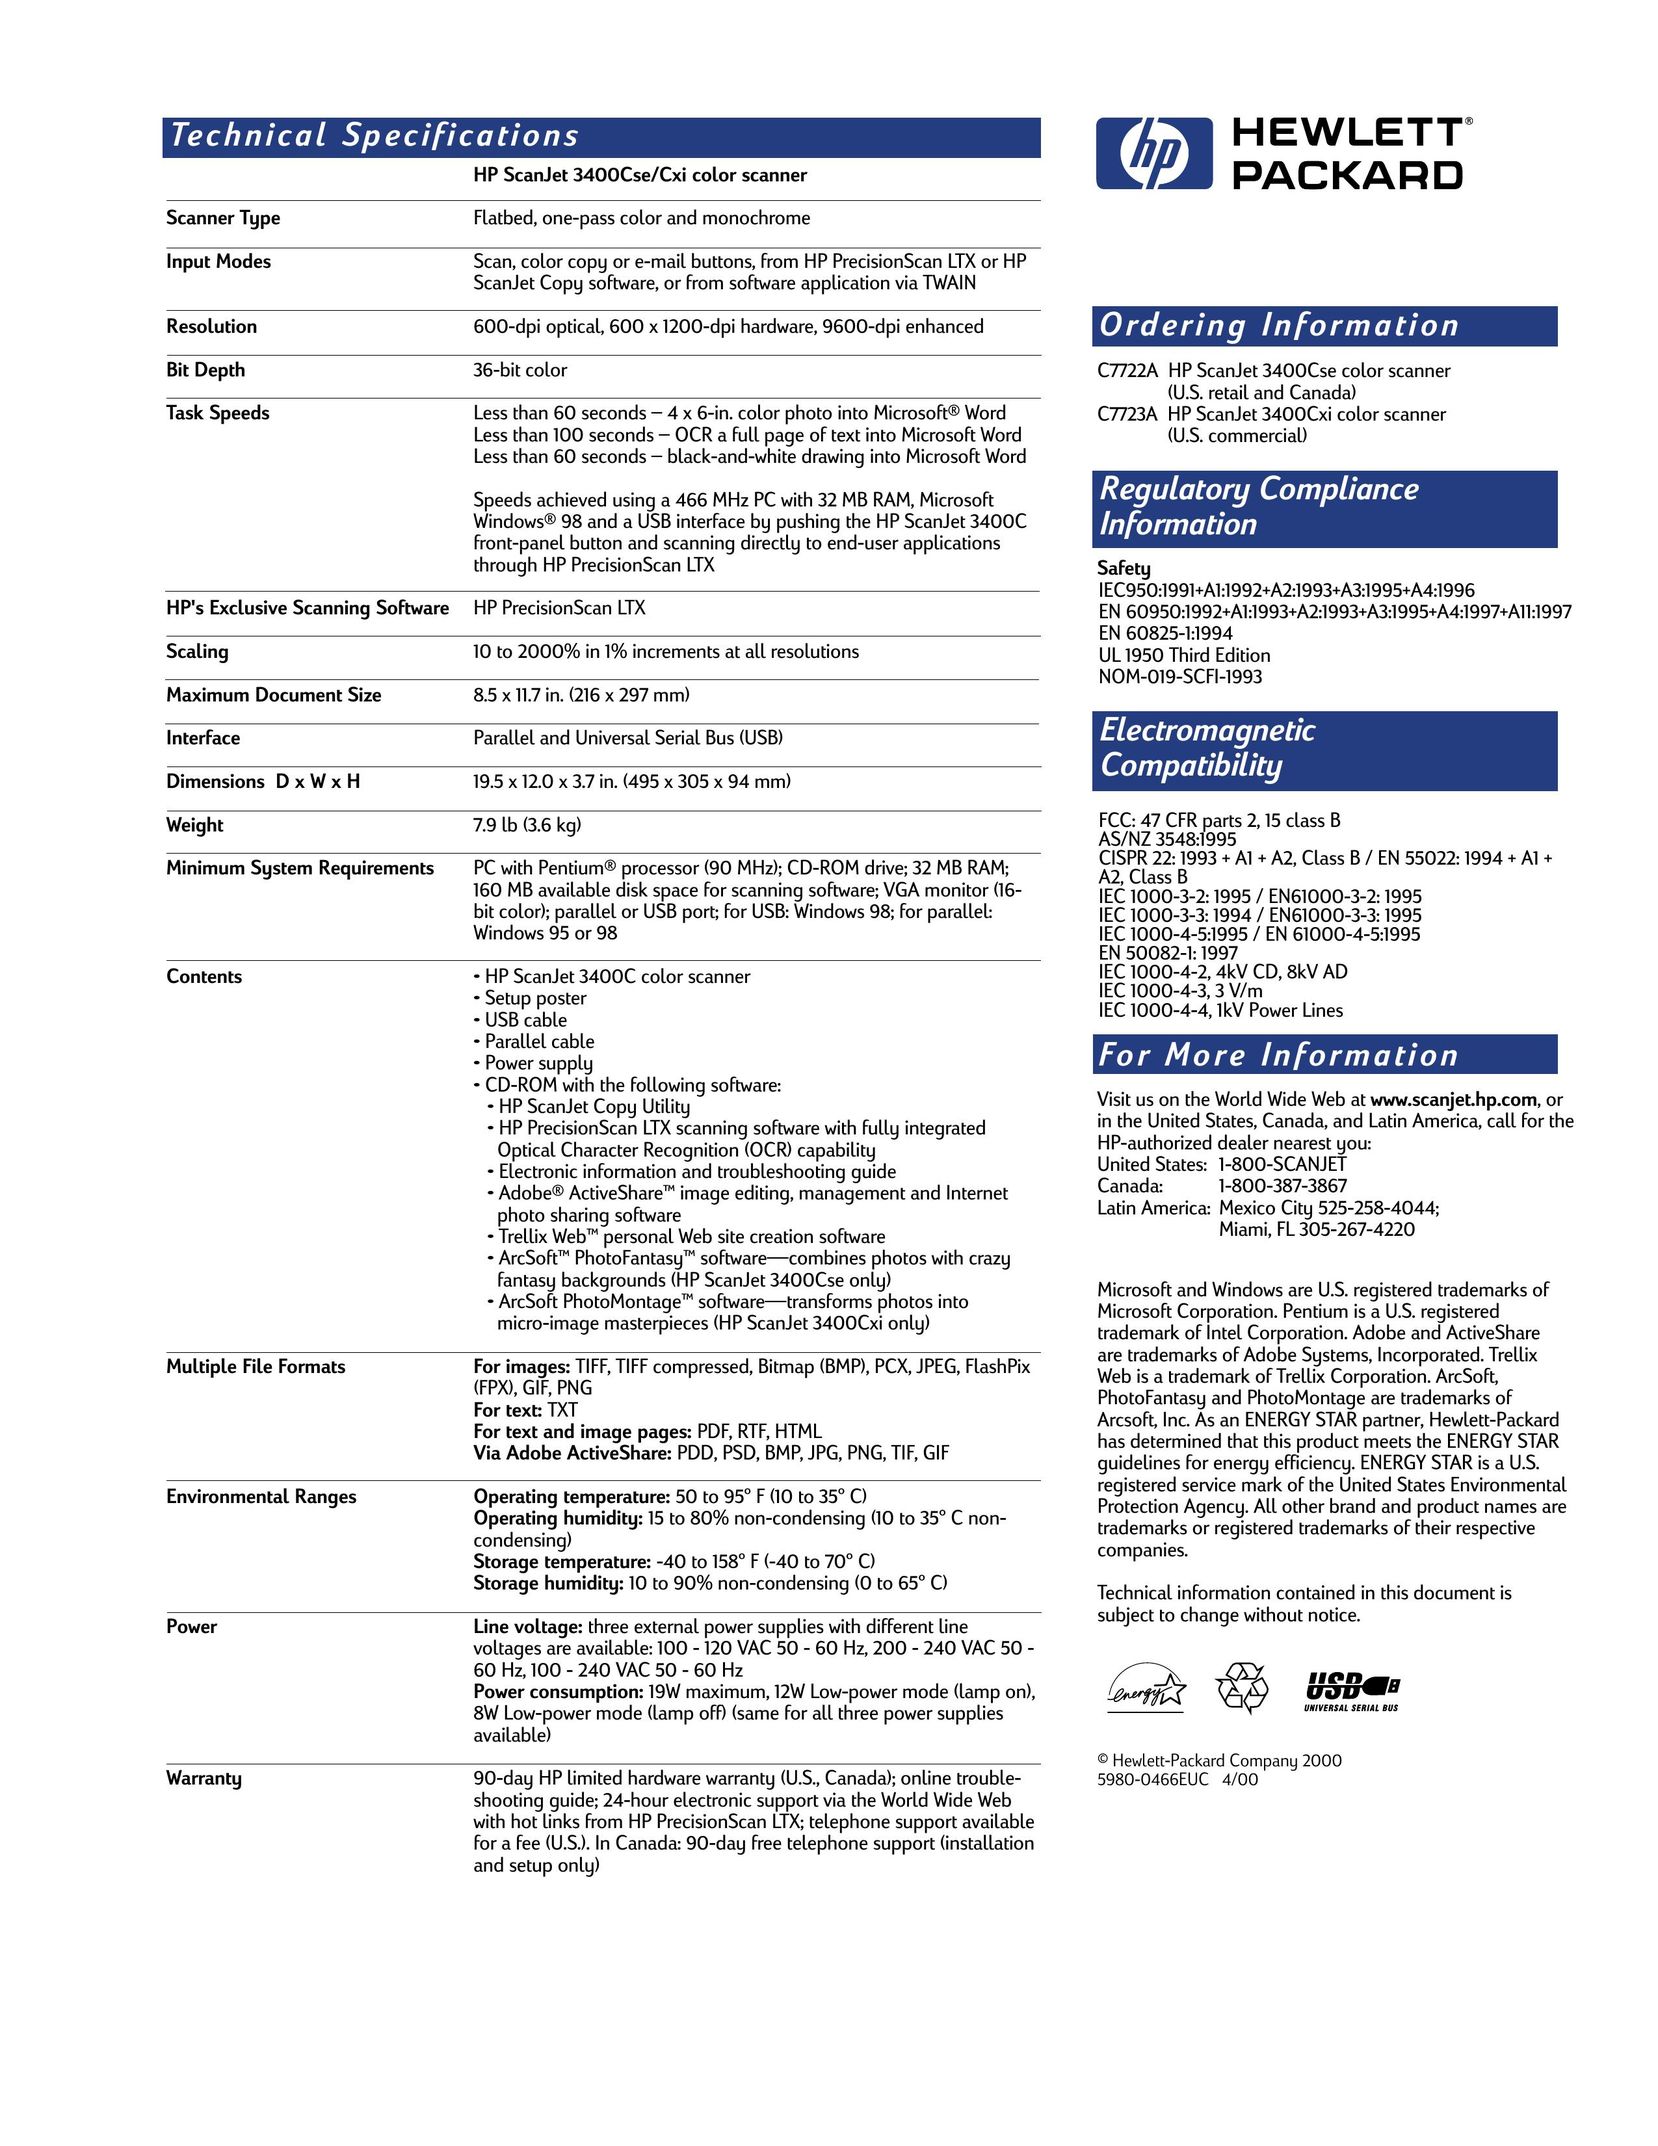 HP (Hewlett-Packard) 3400Cse Scanner User Manual